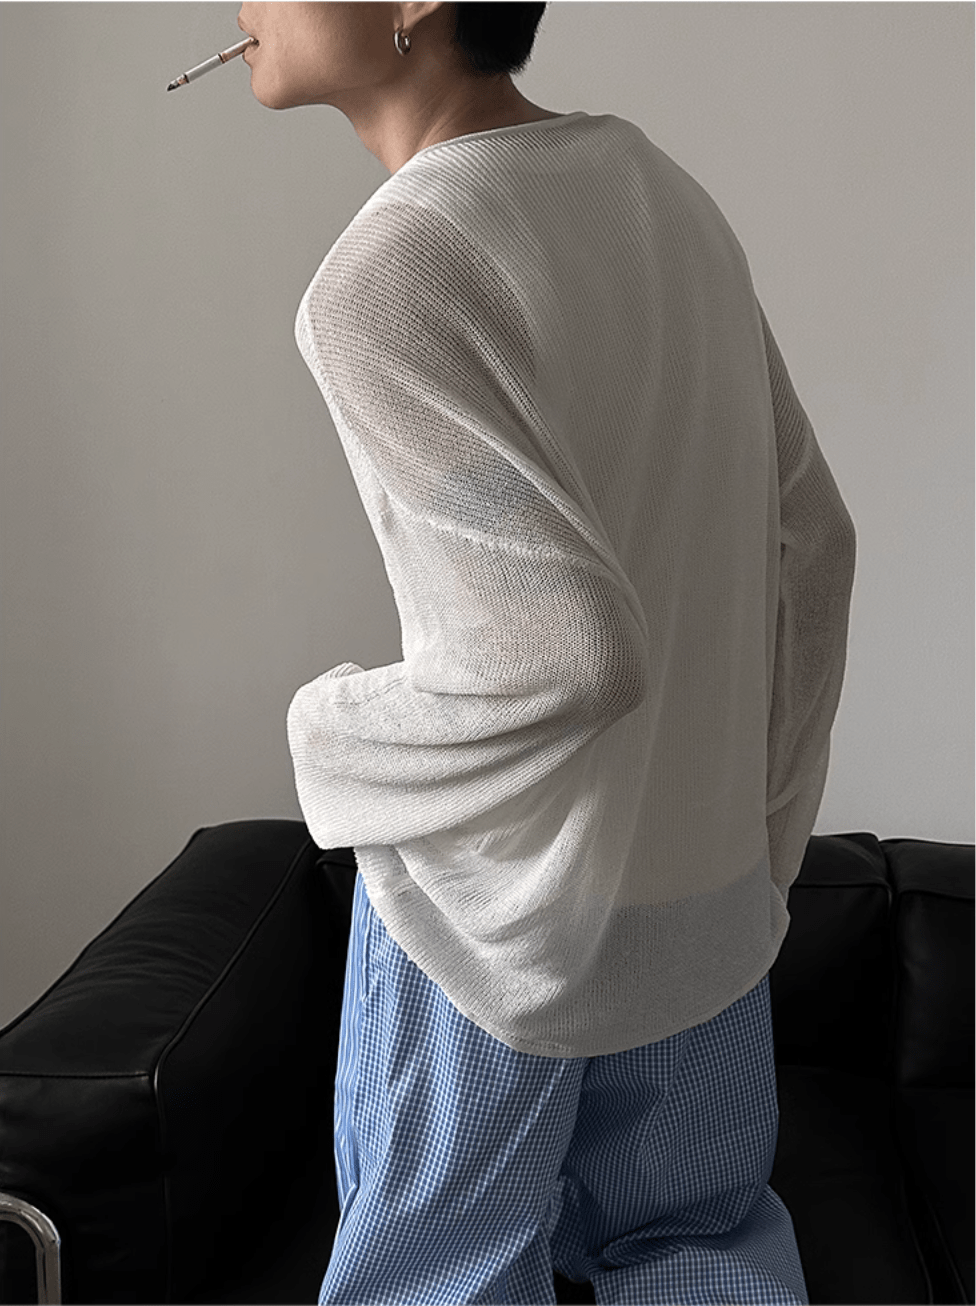 [GENESISBOY] lazy style hollow sweater na1074